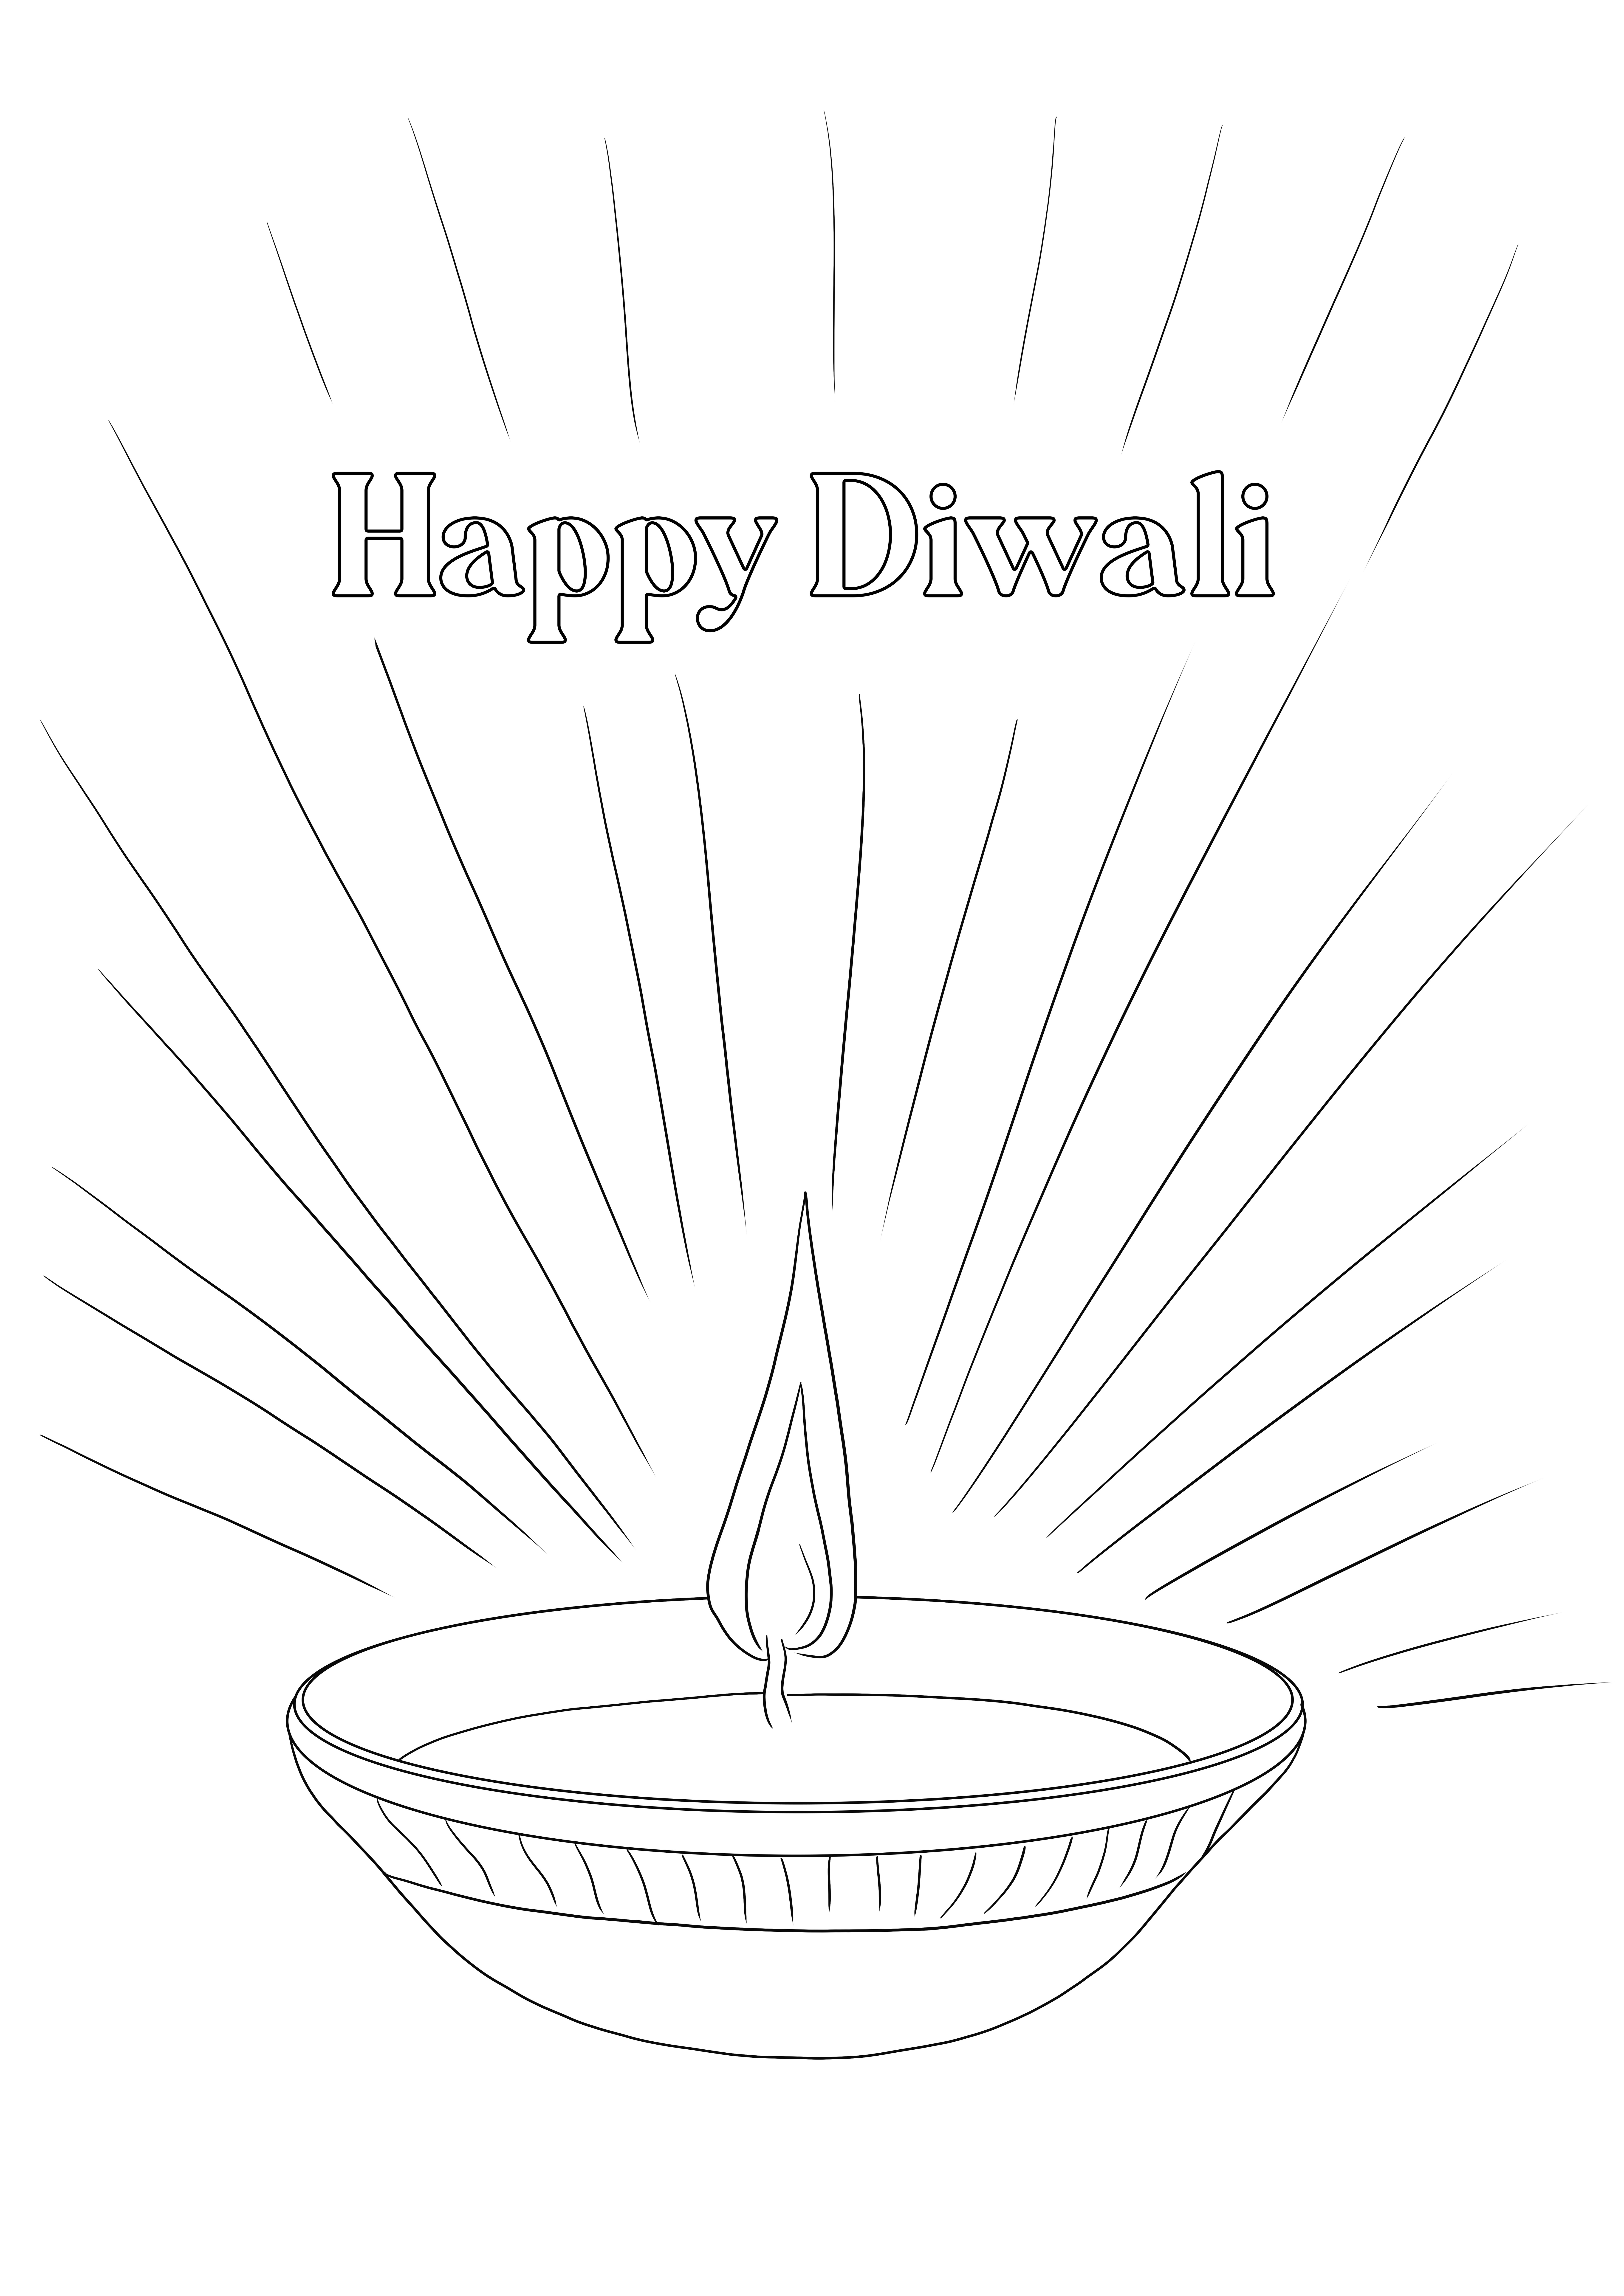 Diwali Diya colorazione semplice e stampa gratuita per bambini di tutte le età